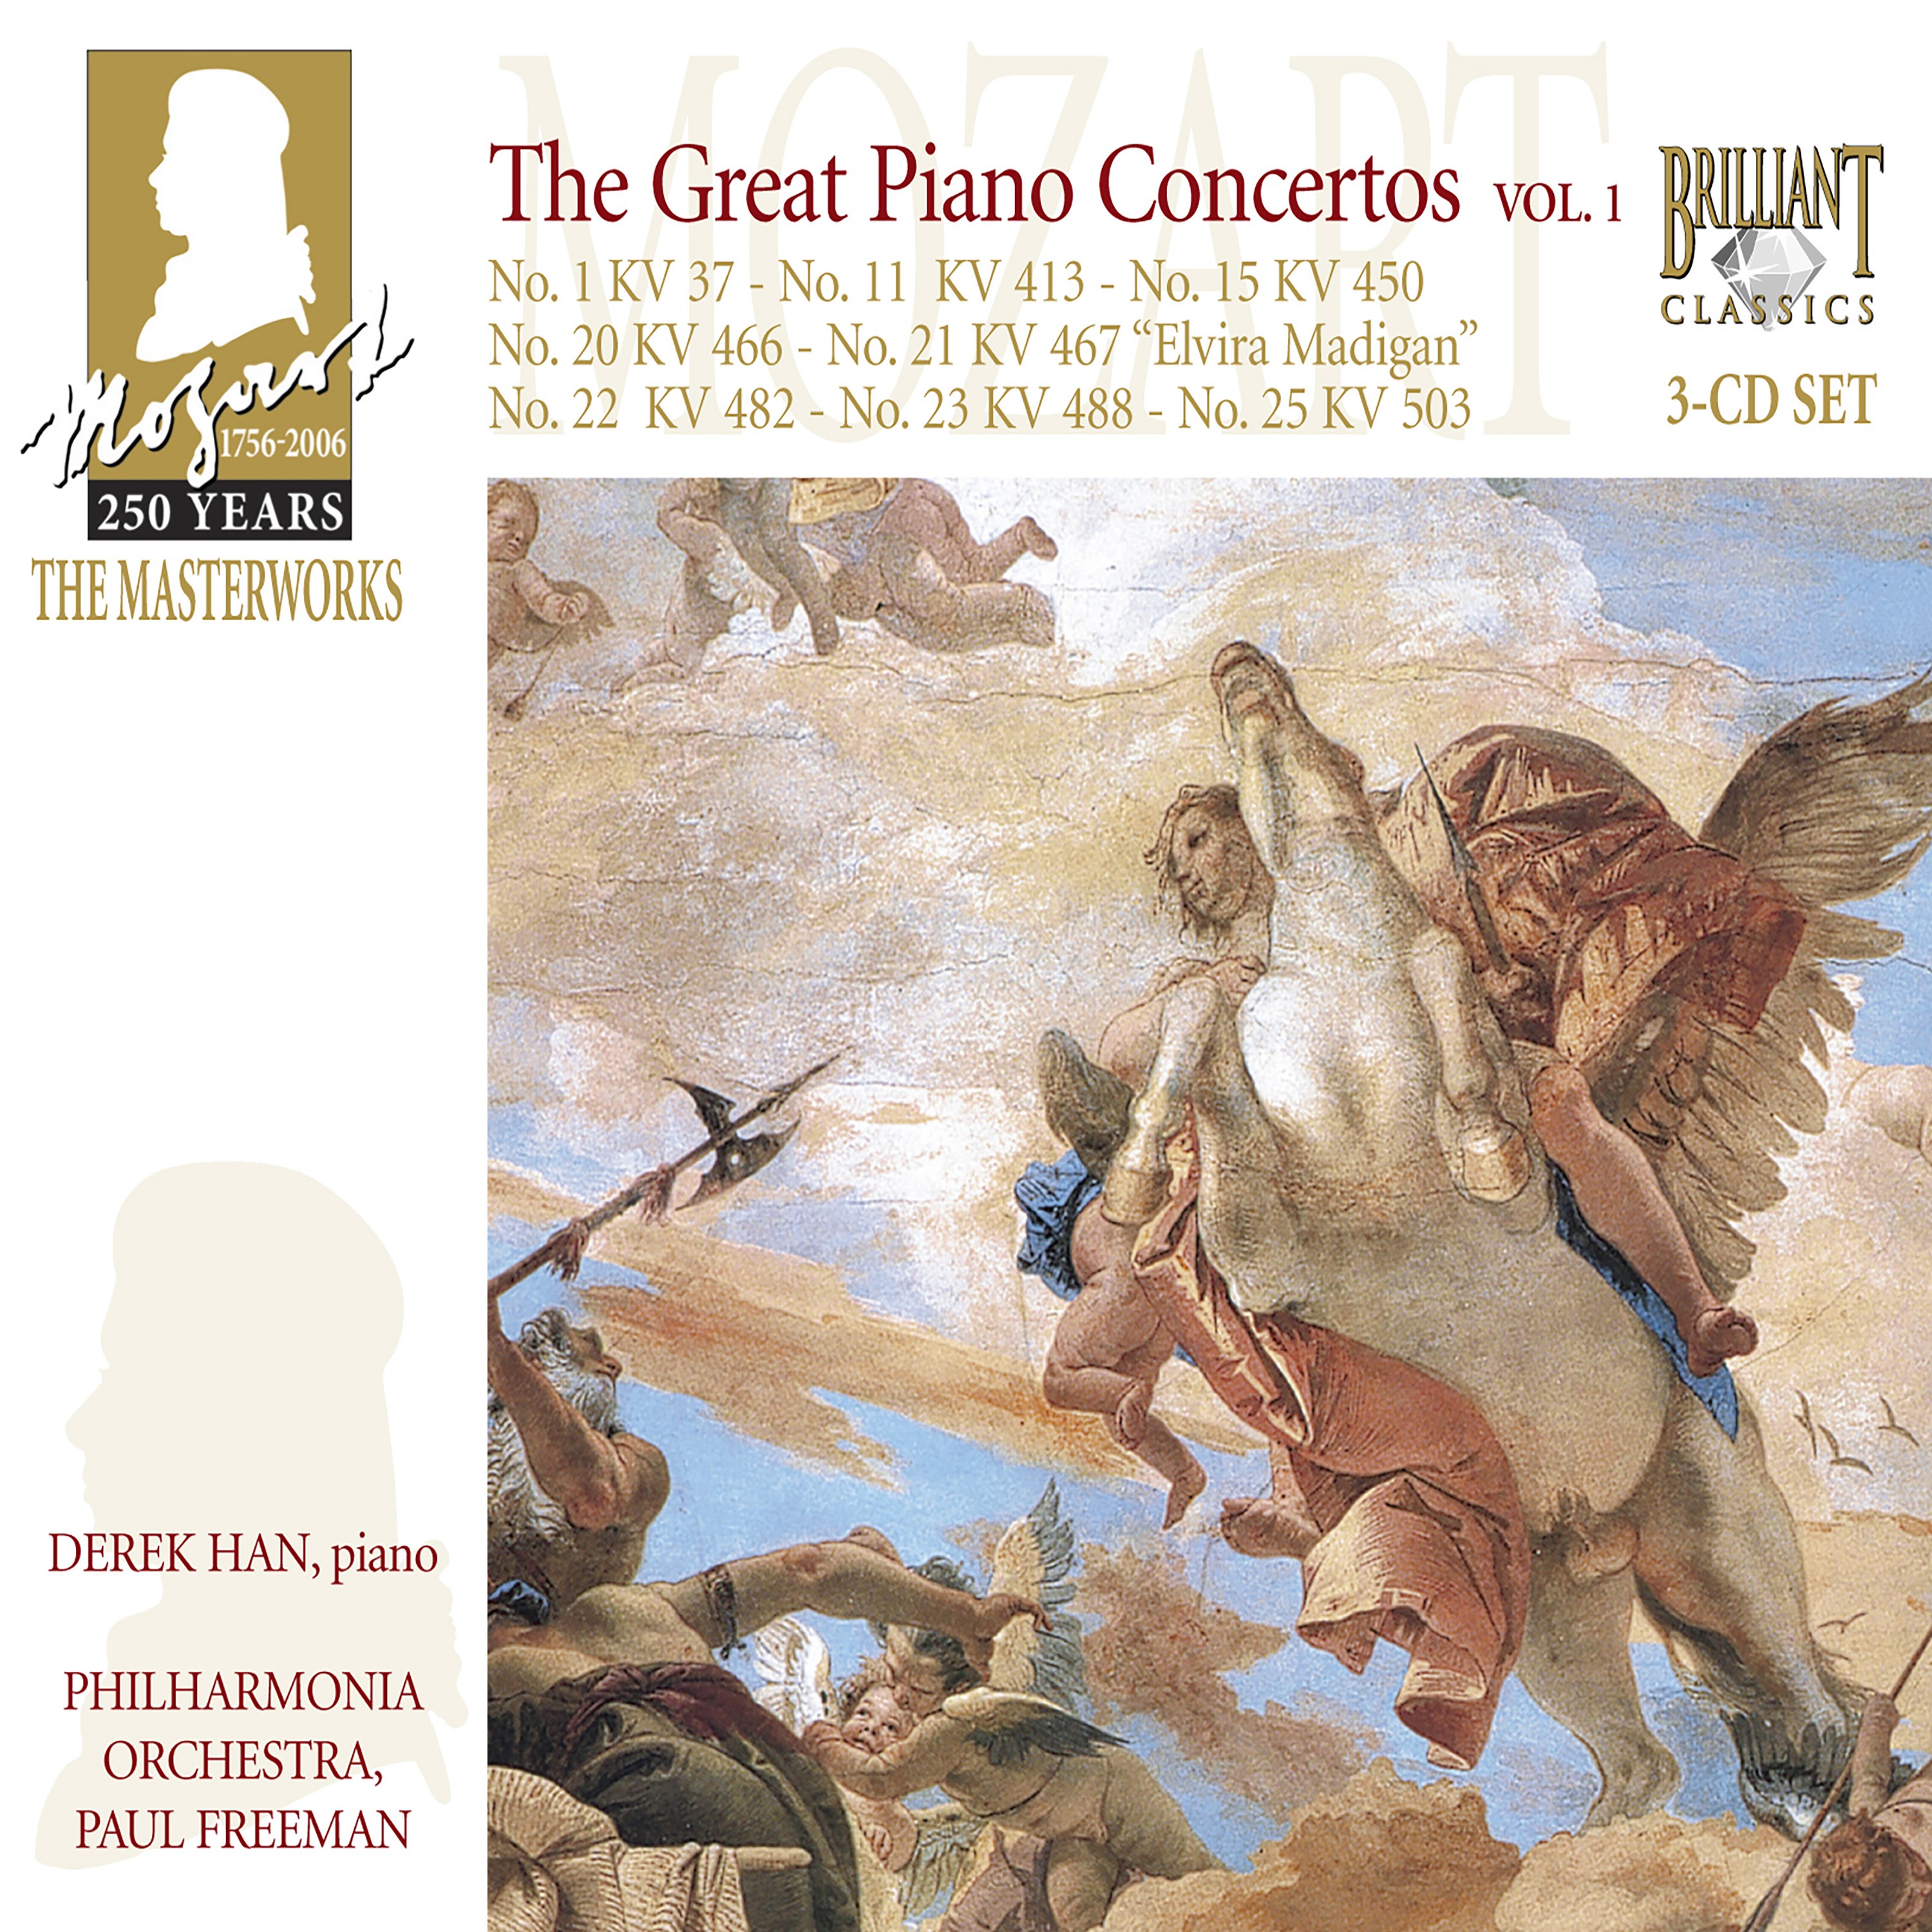 Piano Concerto No. 15 In B Falt Major, K. 450: II. Adagio